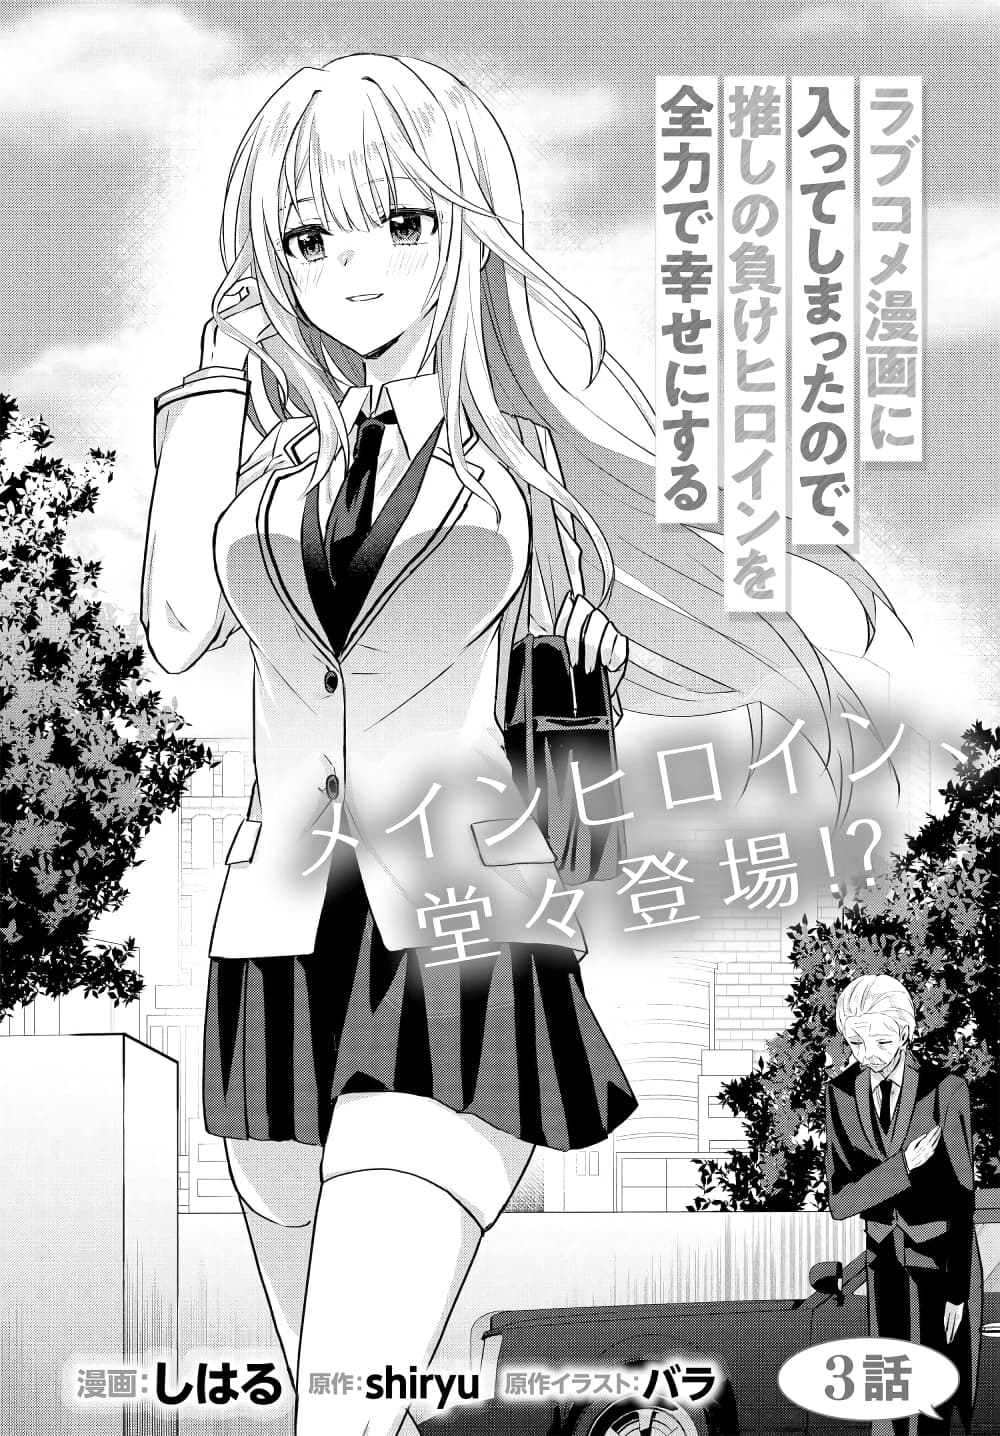 Romcom Manga ni Haitte Shimatta no de, Oshi no Make Heroine wo Zenryoku de Shiawase ni suru ตอนที่ 3.1